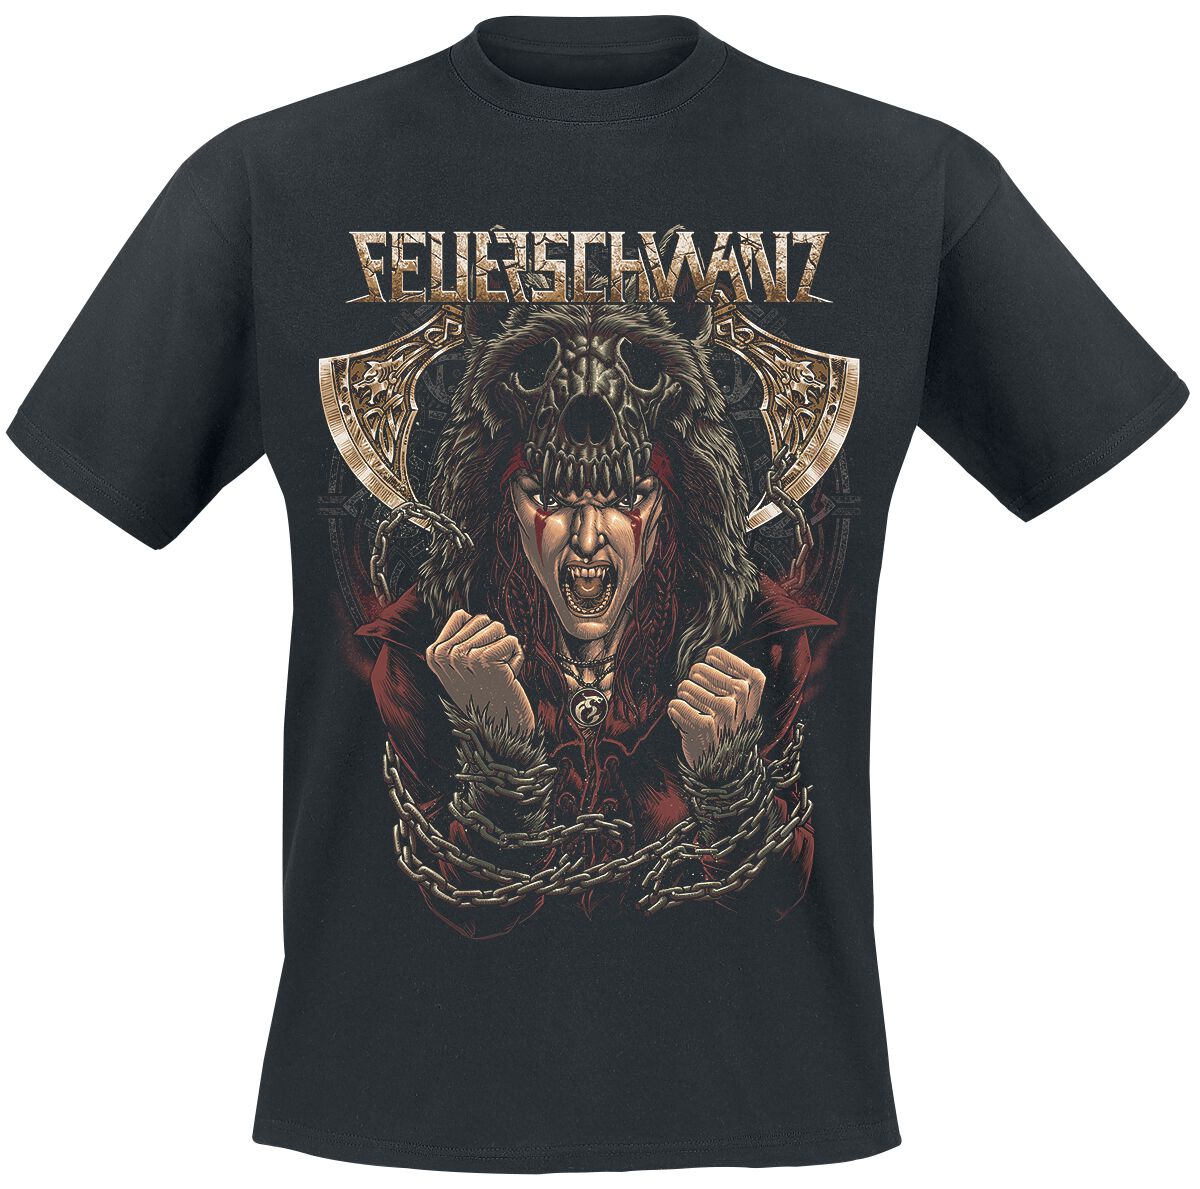 Feuerschwanz T-Shirt - L bis XL - für Männer - Größe L - schwarz  - Lizenziertes Merchandise!